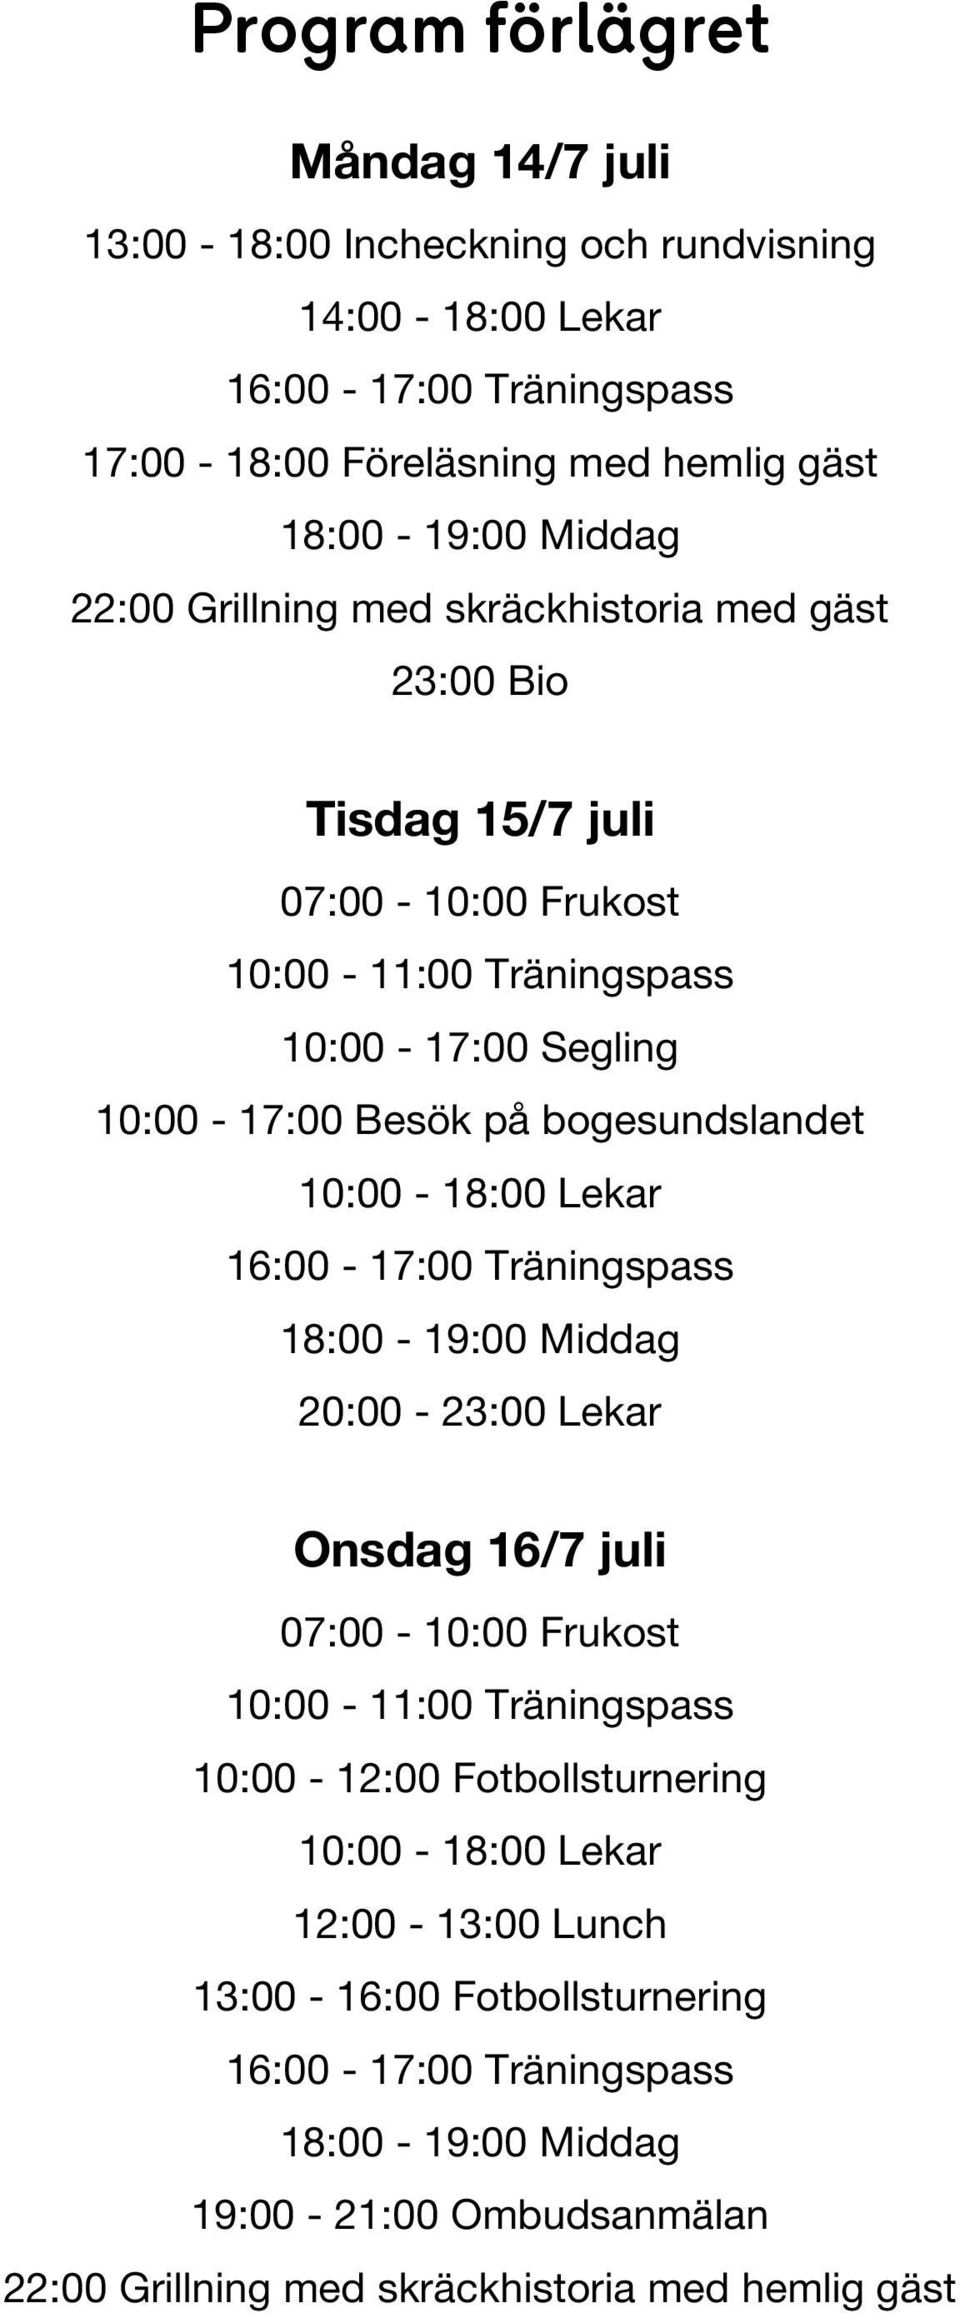 Besök på bogesundslandet 10:00-18:00 Lekar 20:00-23:00 Lekar Onsdag 16/7 juli 07:00-10:00 Frukost 10:00-11:00 Träningspass 10:00-12:00